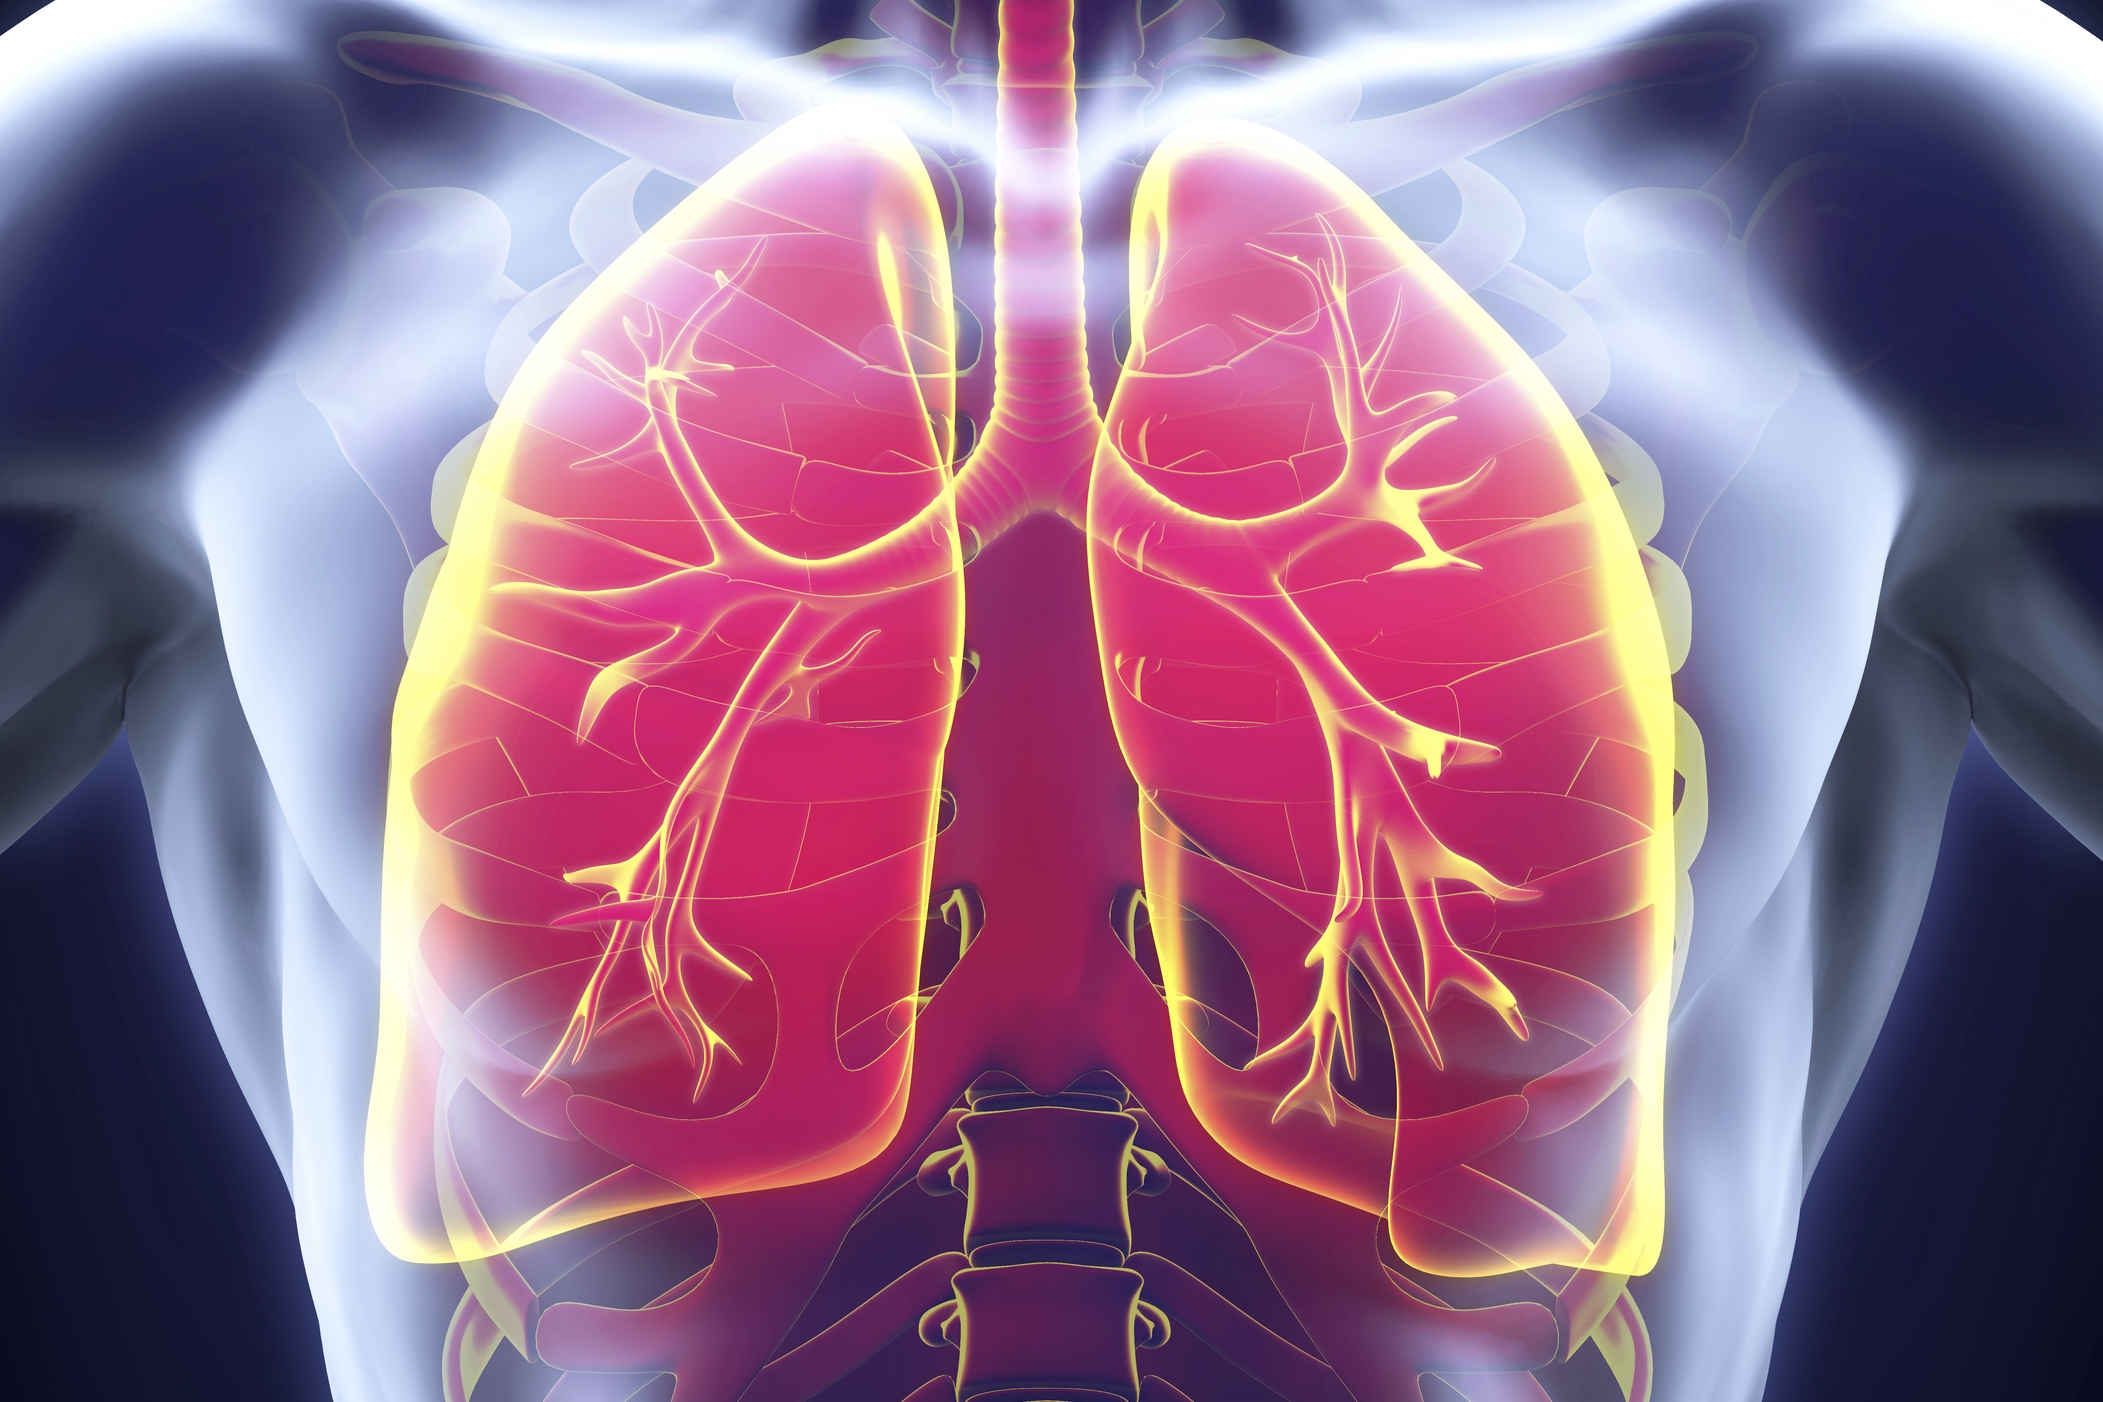 L'appareil respiratoire: anatomie et fonctions 